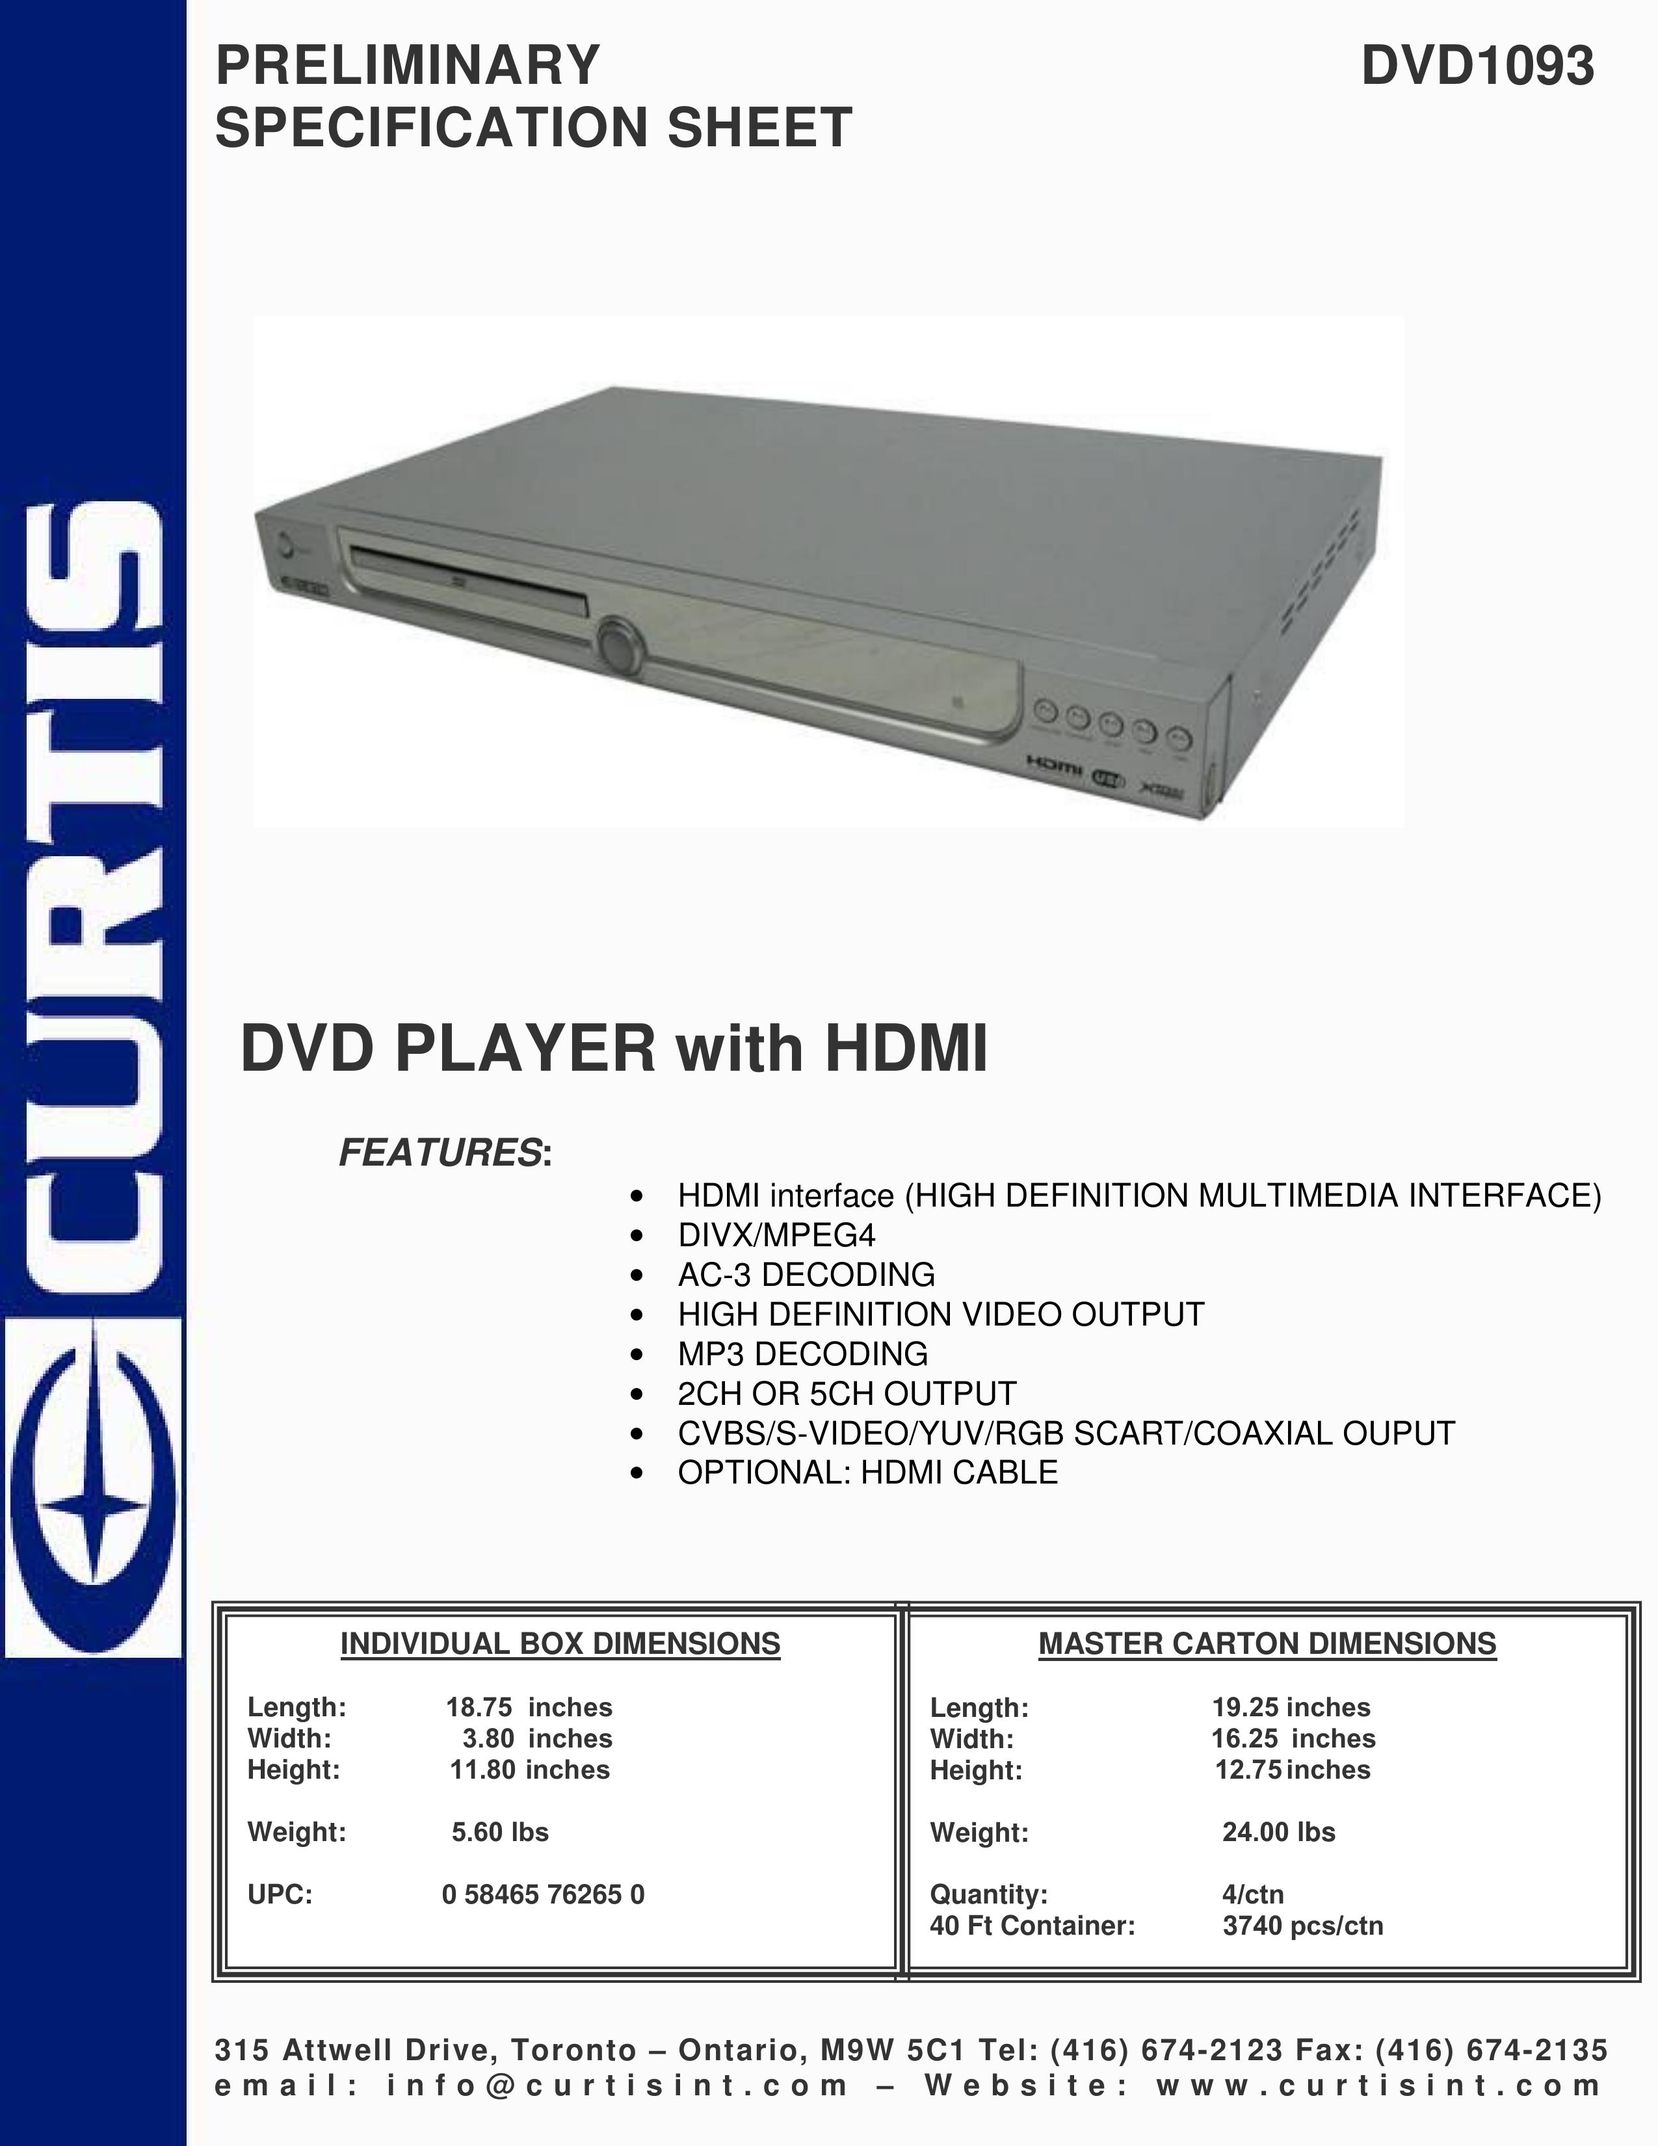 Curtis DVD1093 DVD Player User Manual